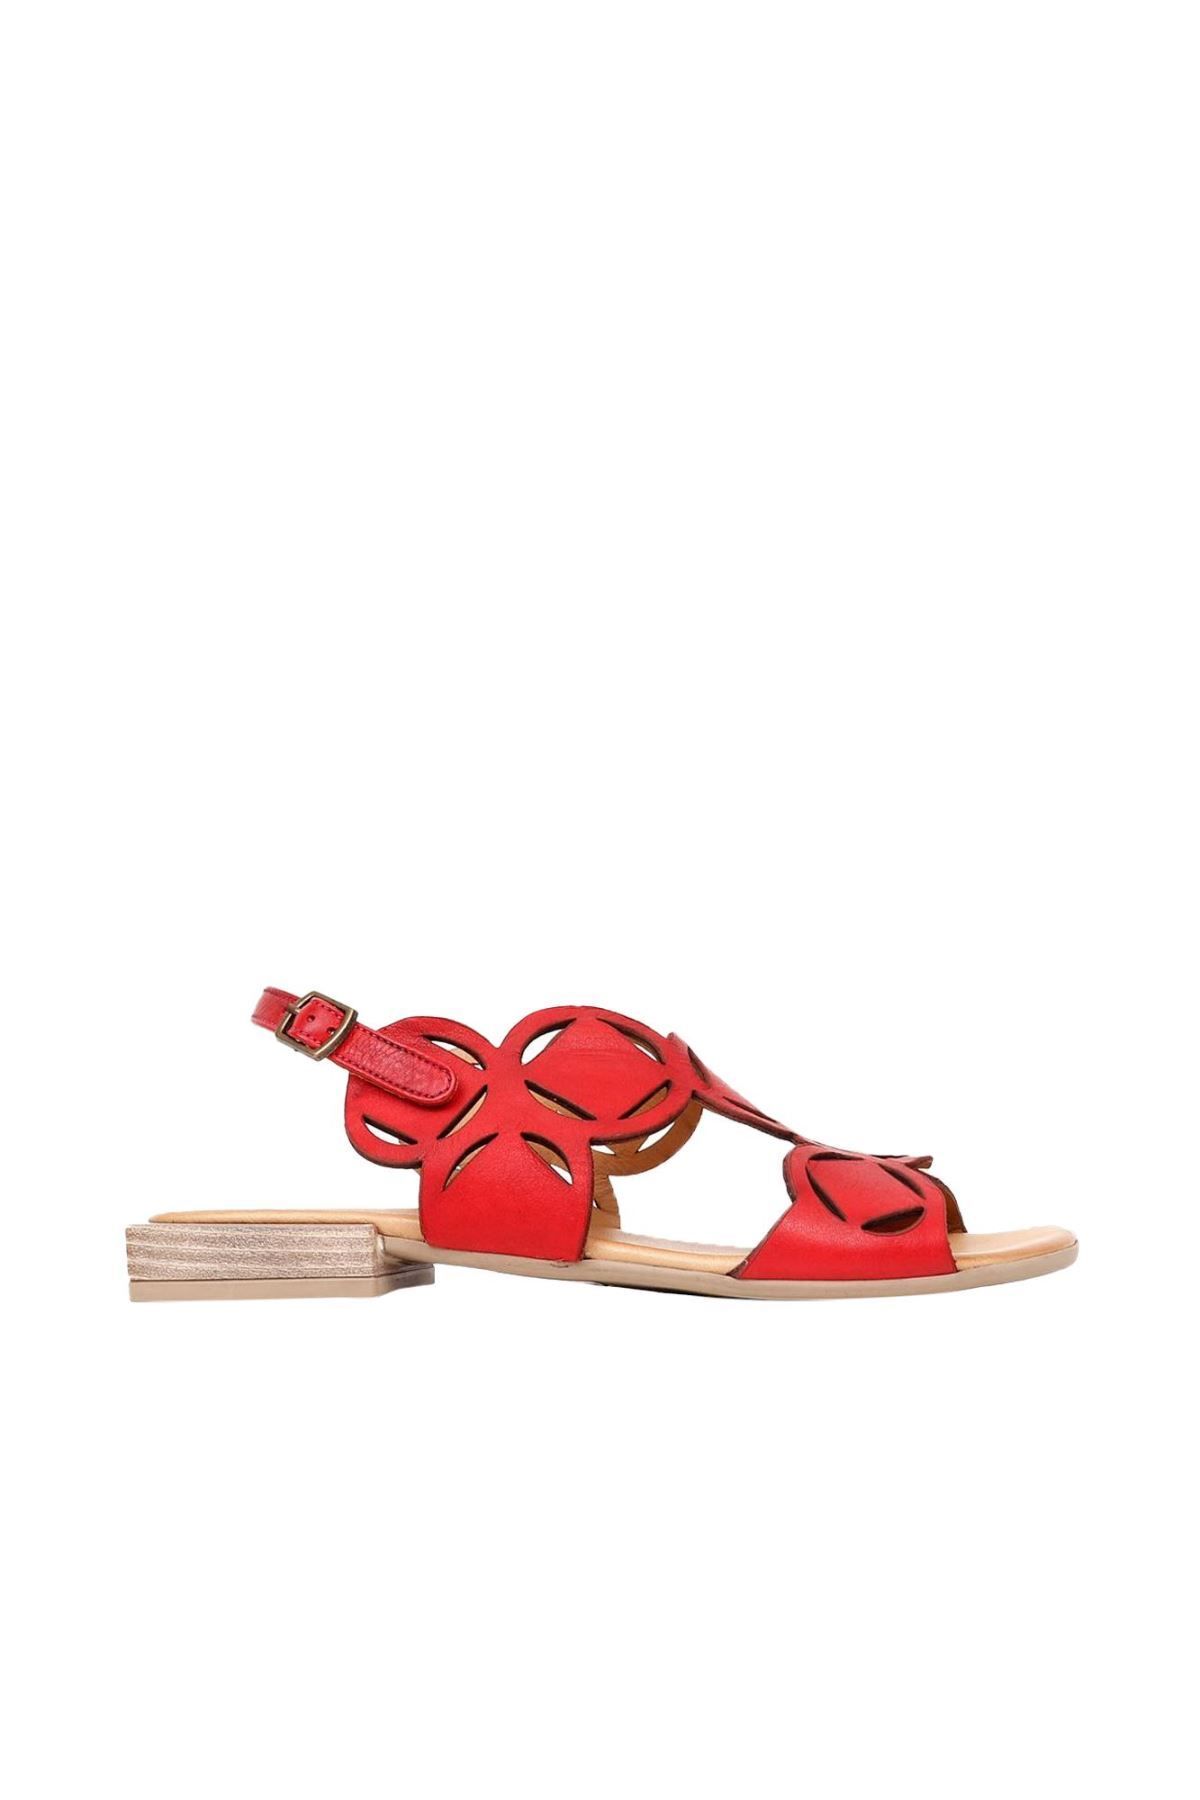 BUENO Shoes Kırmızı Deri Kadın Sandalet